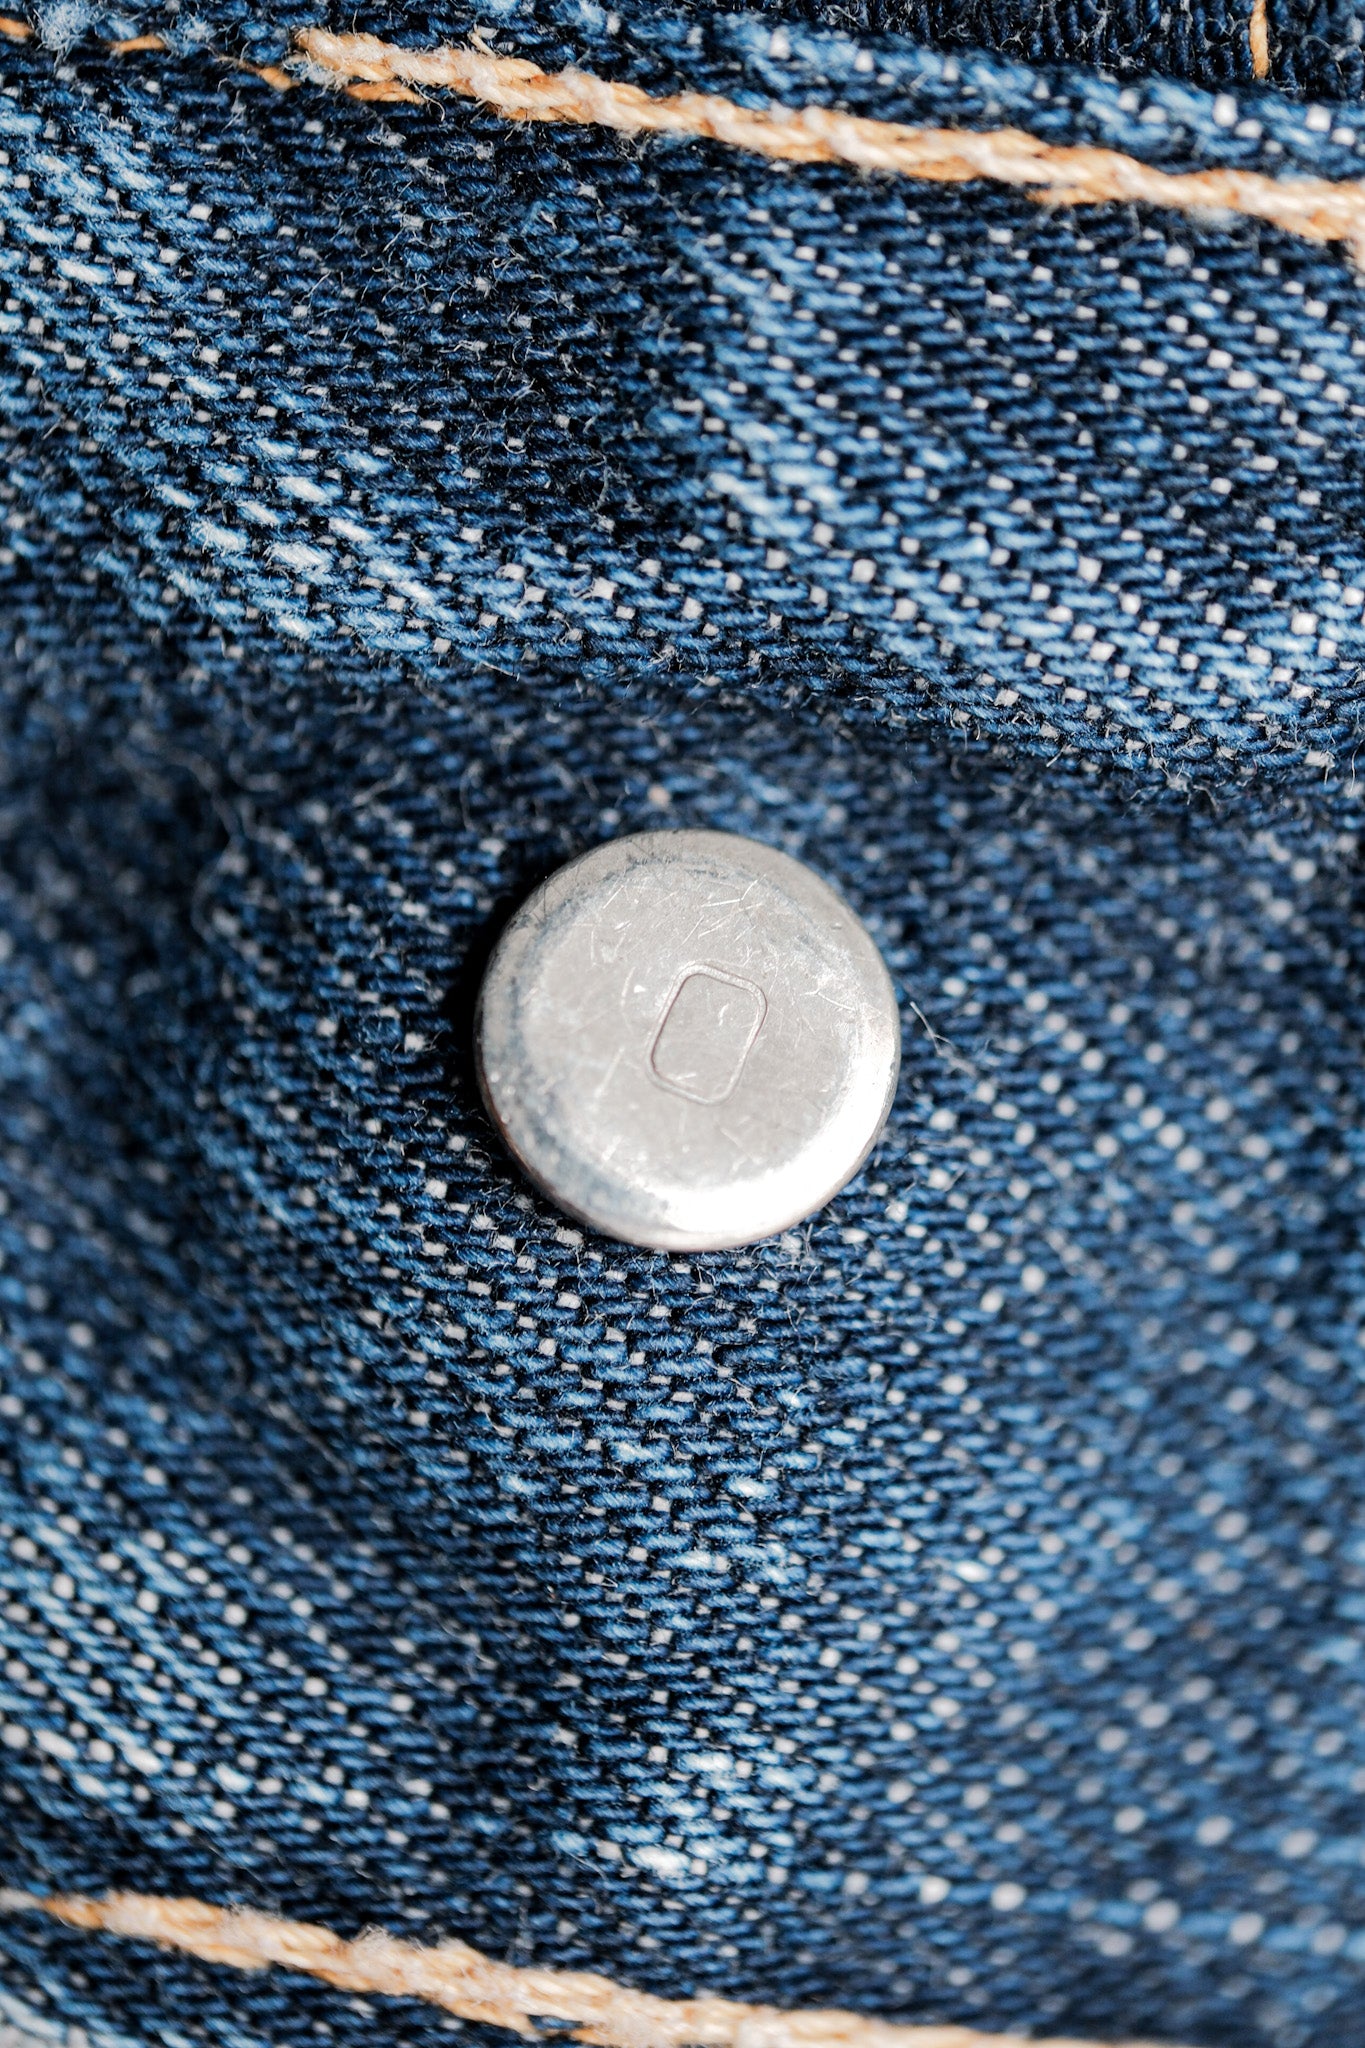 [~ 60 년대] 빈티지 레위의 557 데님 재킷 크기 .40 "Big E"